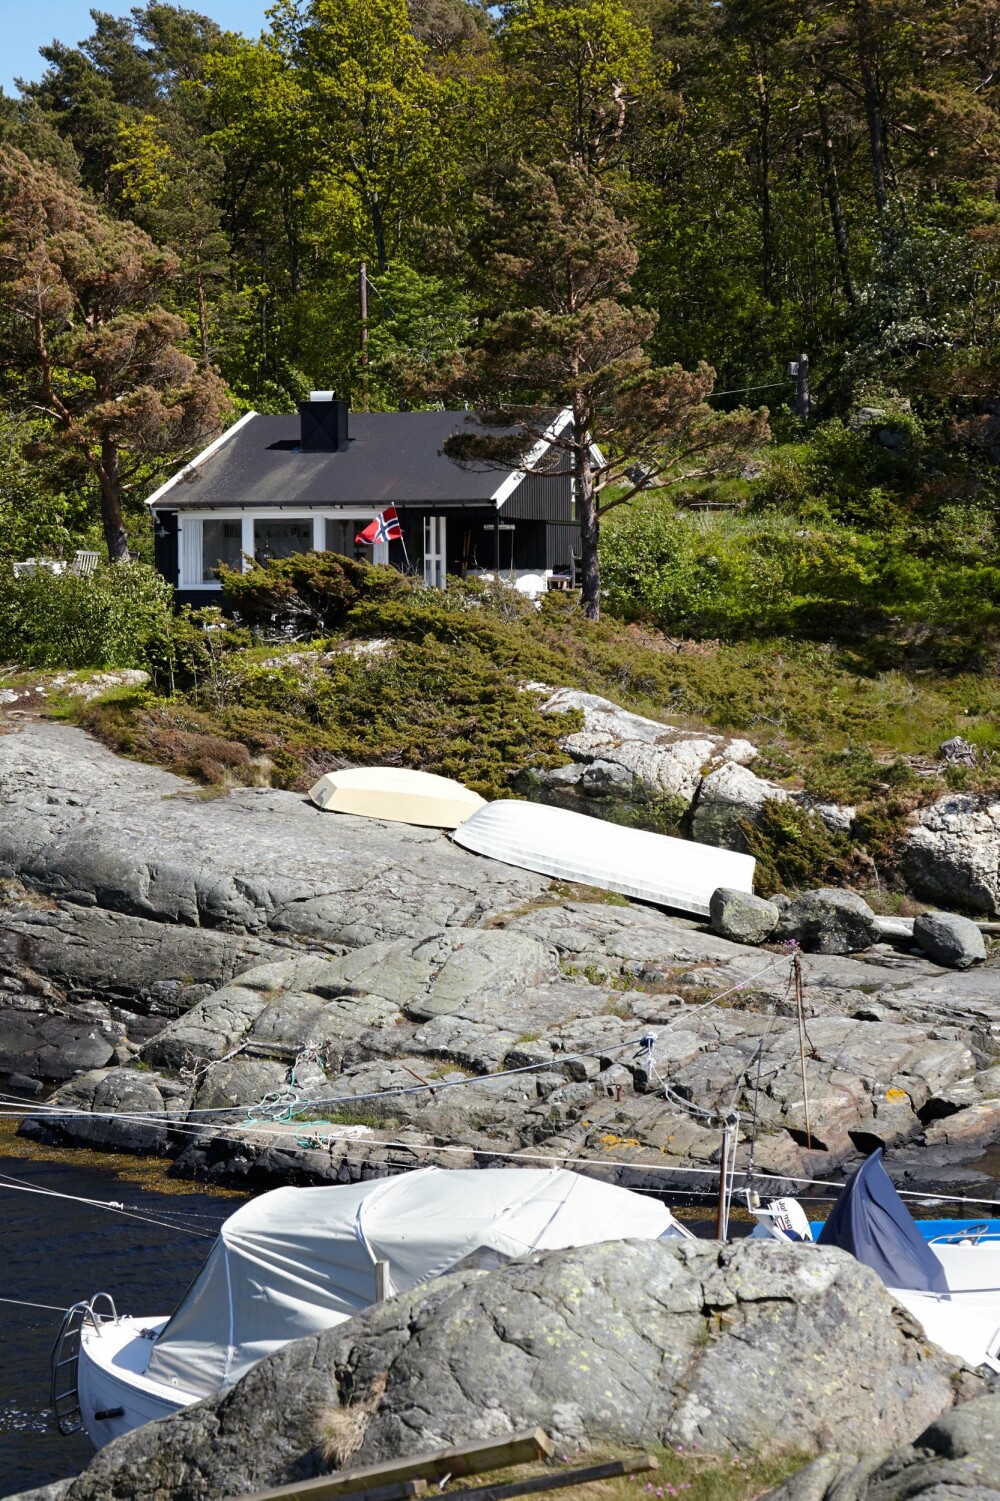 BÅTLIV: Sjøveien er den raskeste veien til hytta fra Kristiansand. En smal bukt gir fine båtplasser. 